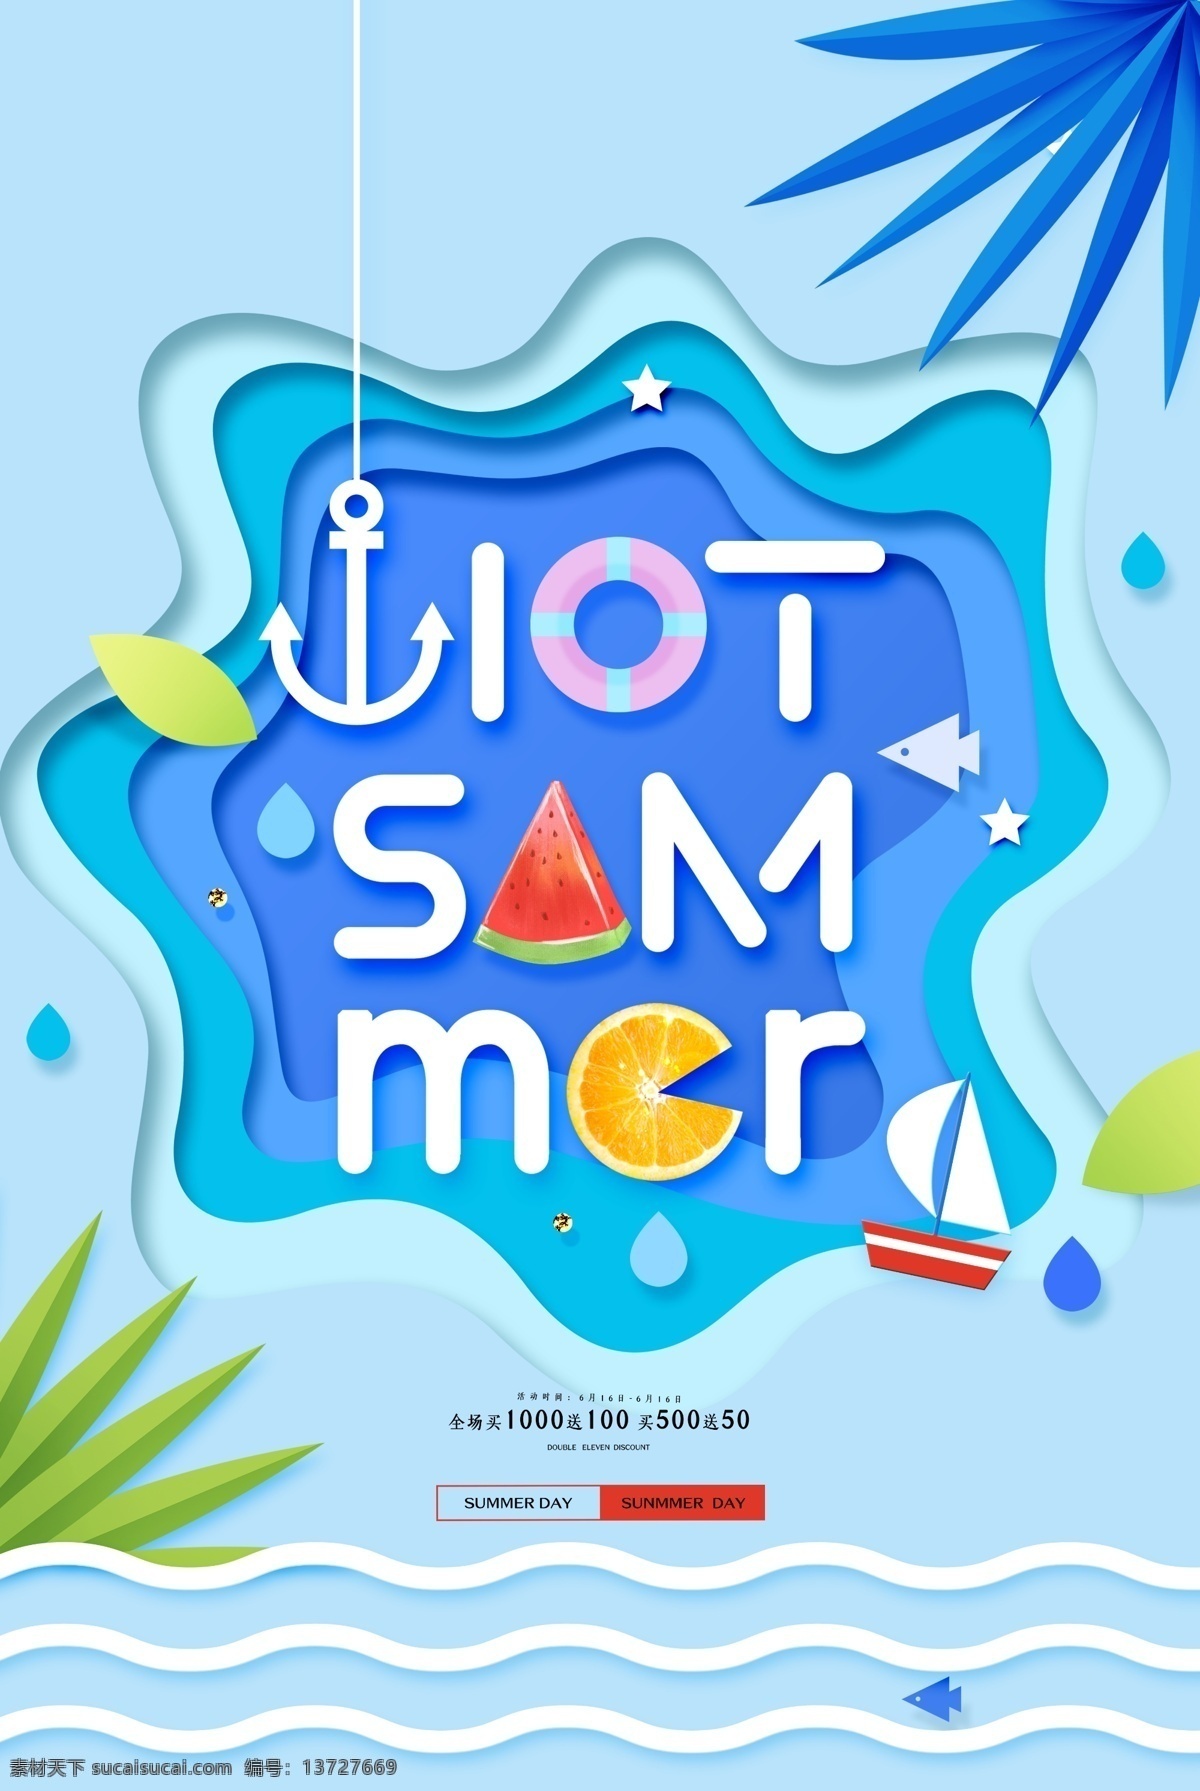 夏季 活动 促销 宣传海报 宣传 海报